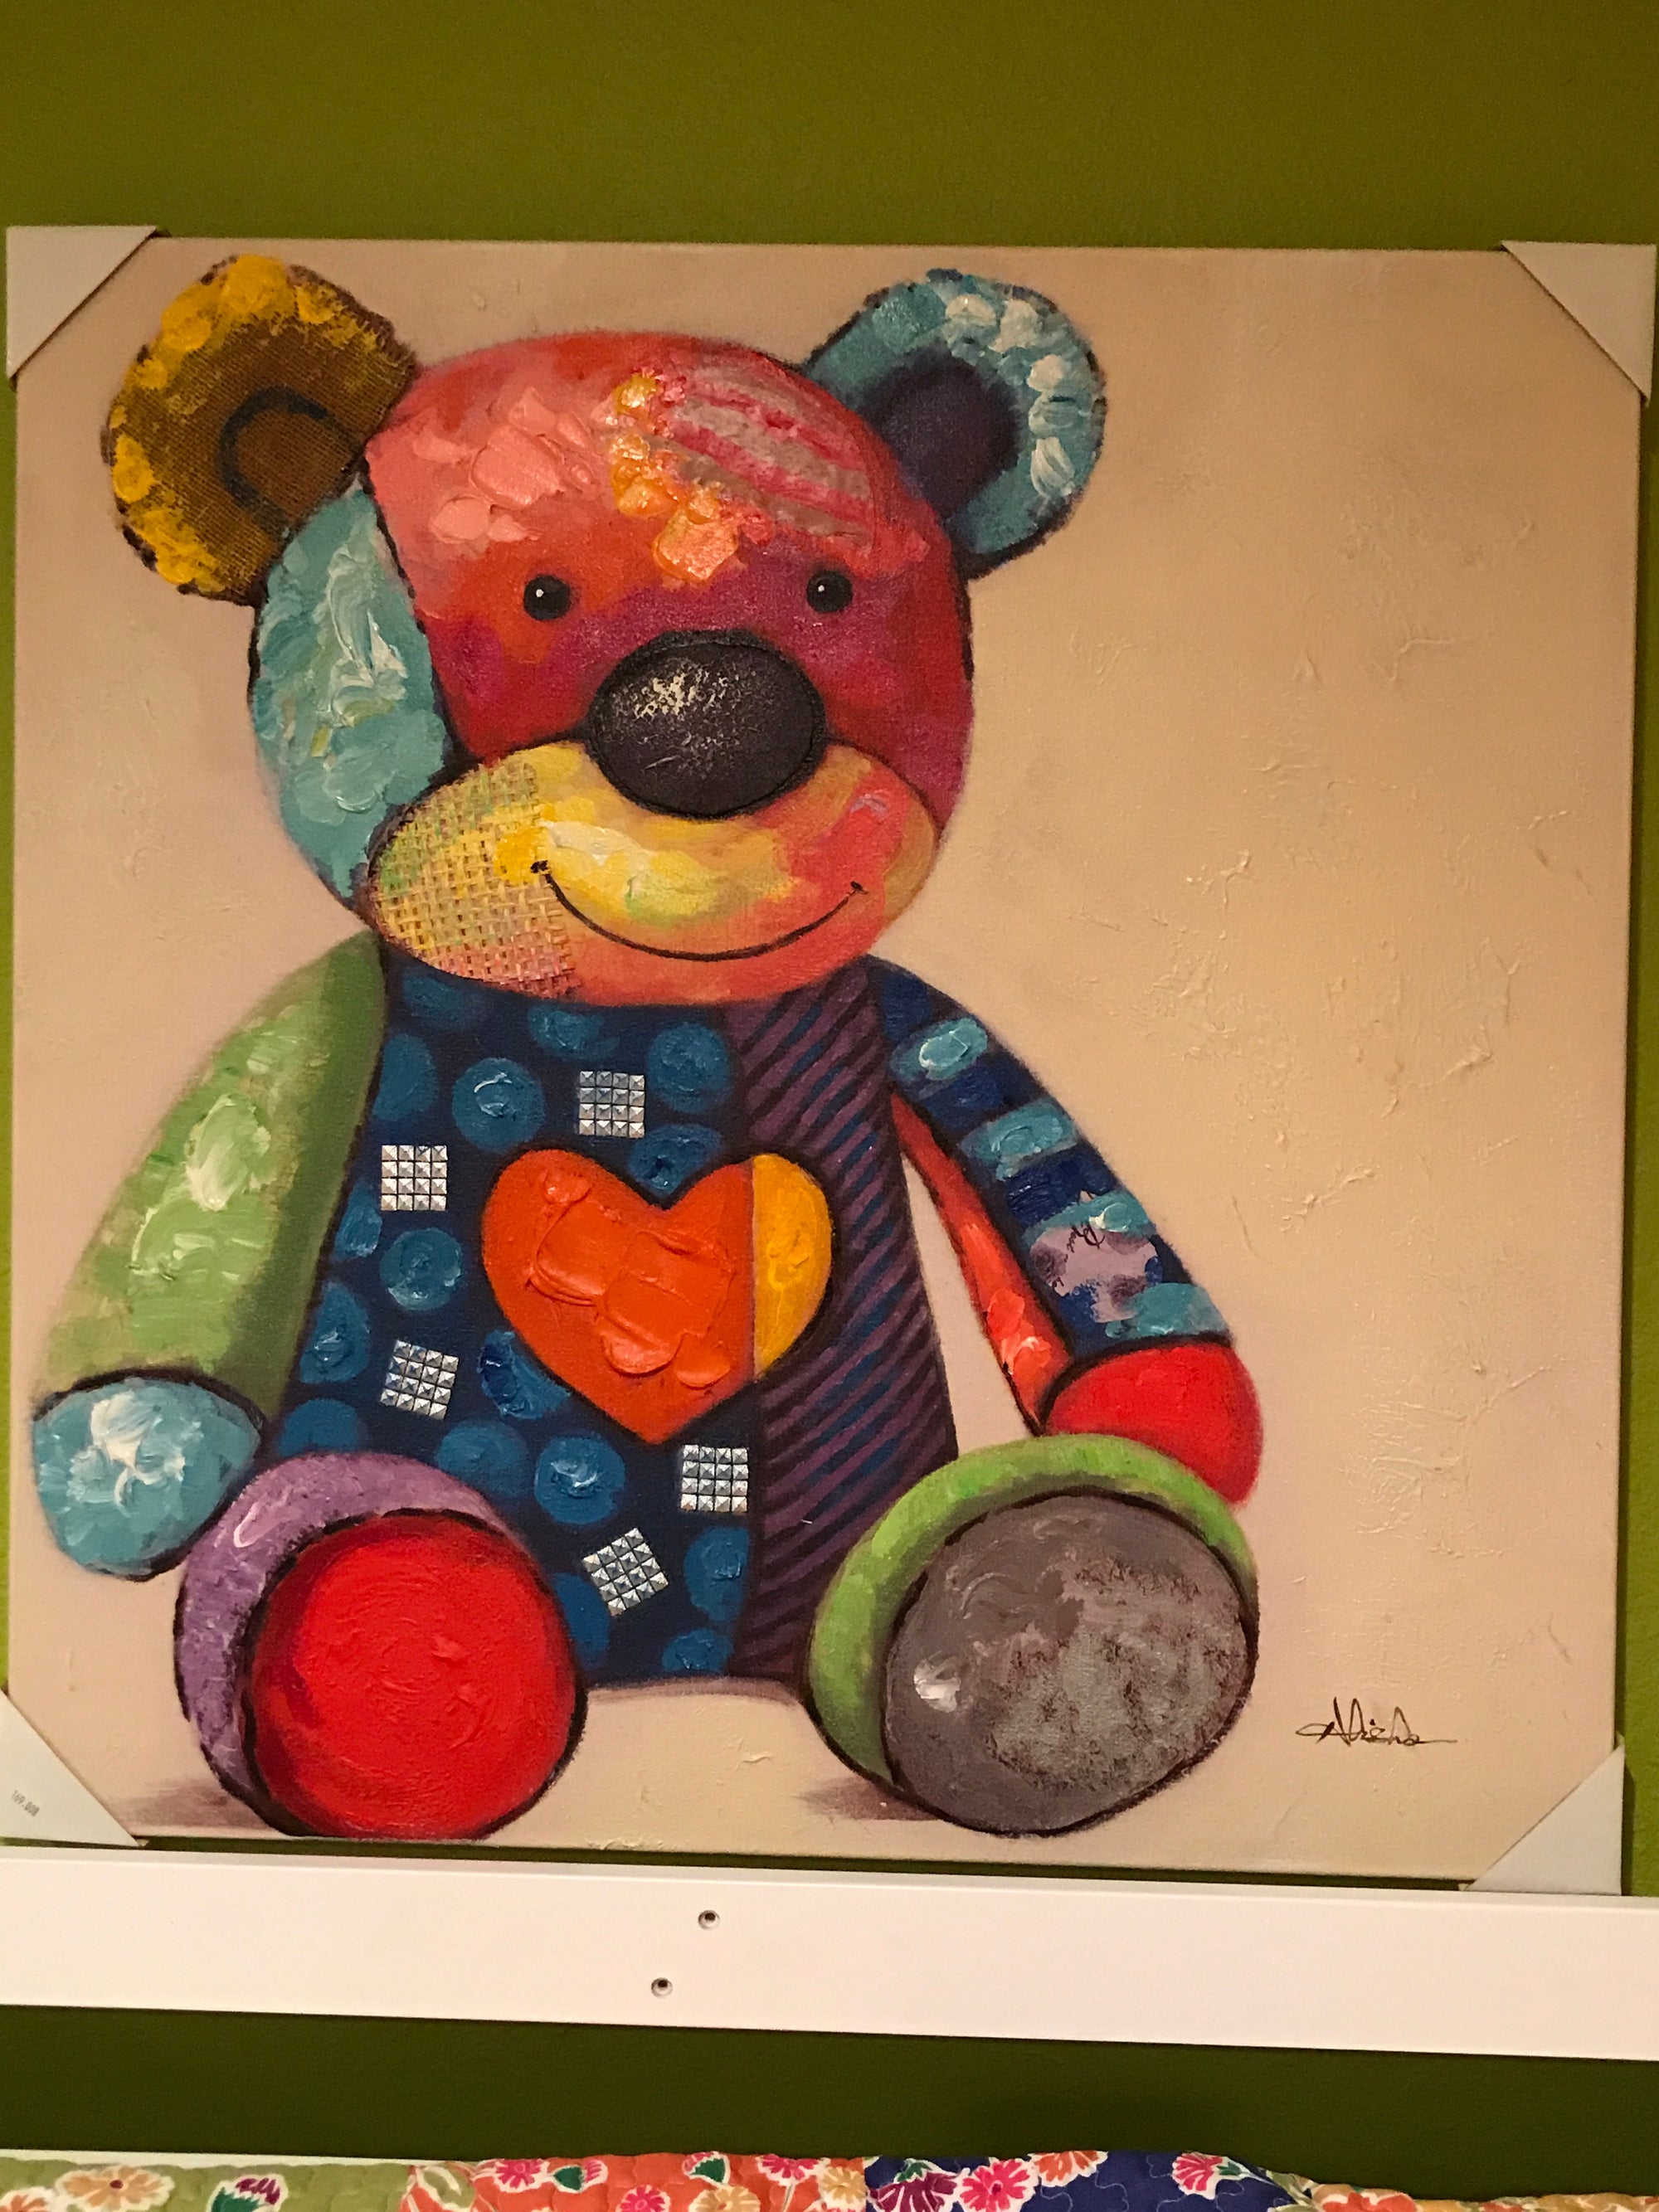 Gallery Wrap Teddy Bear with Heart Canvas Art